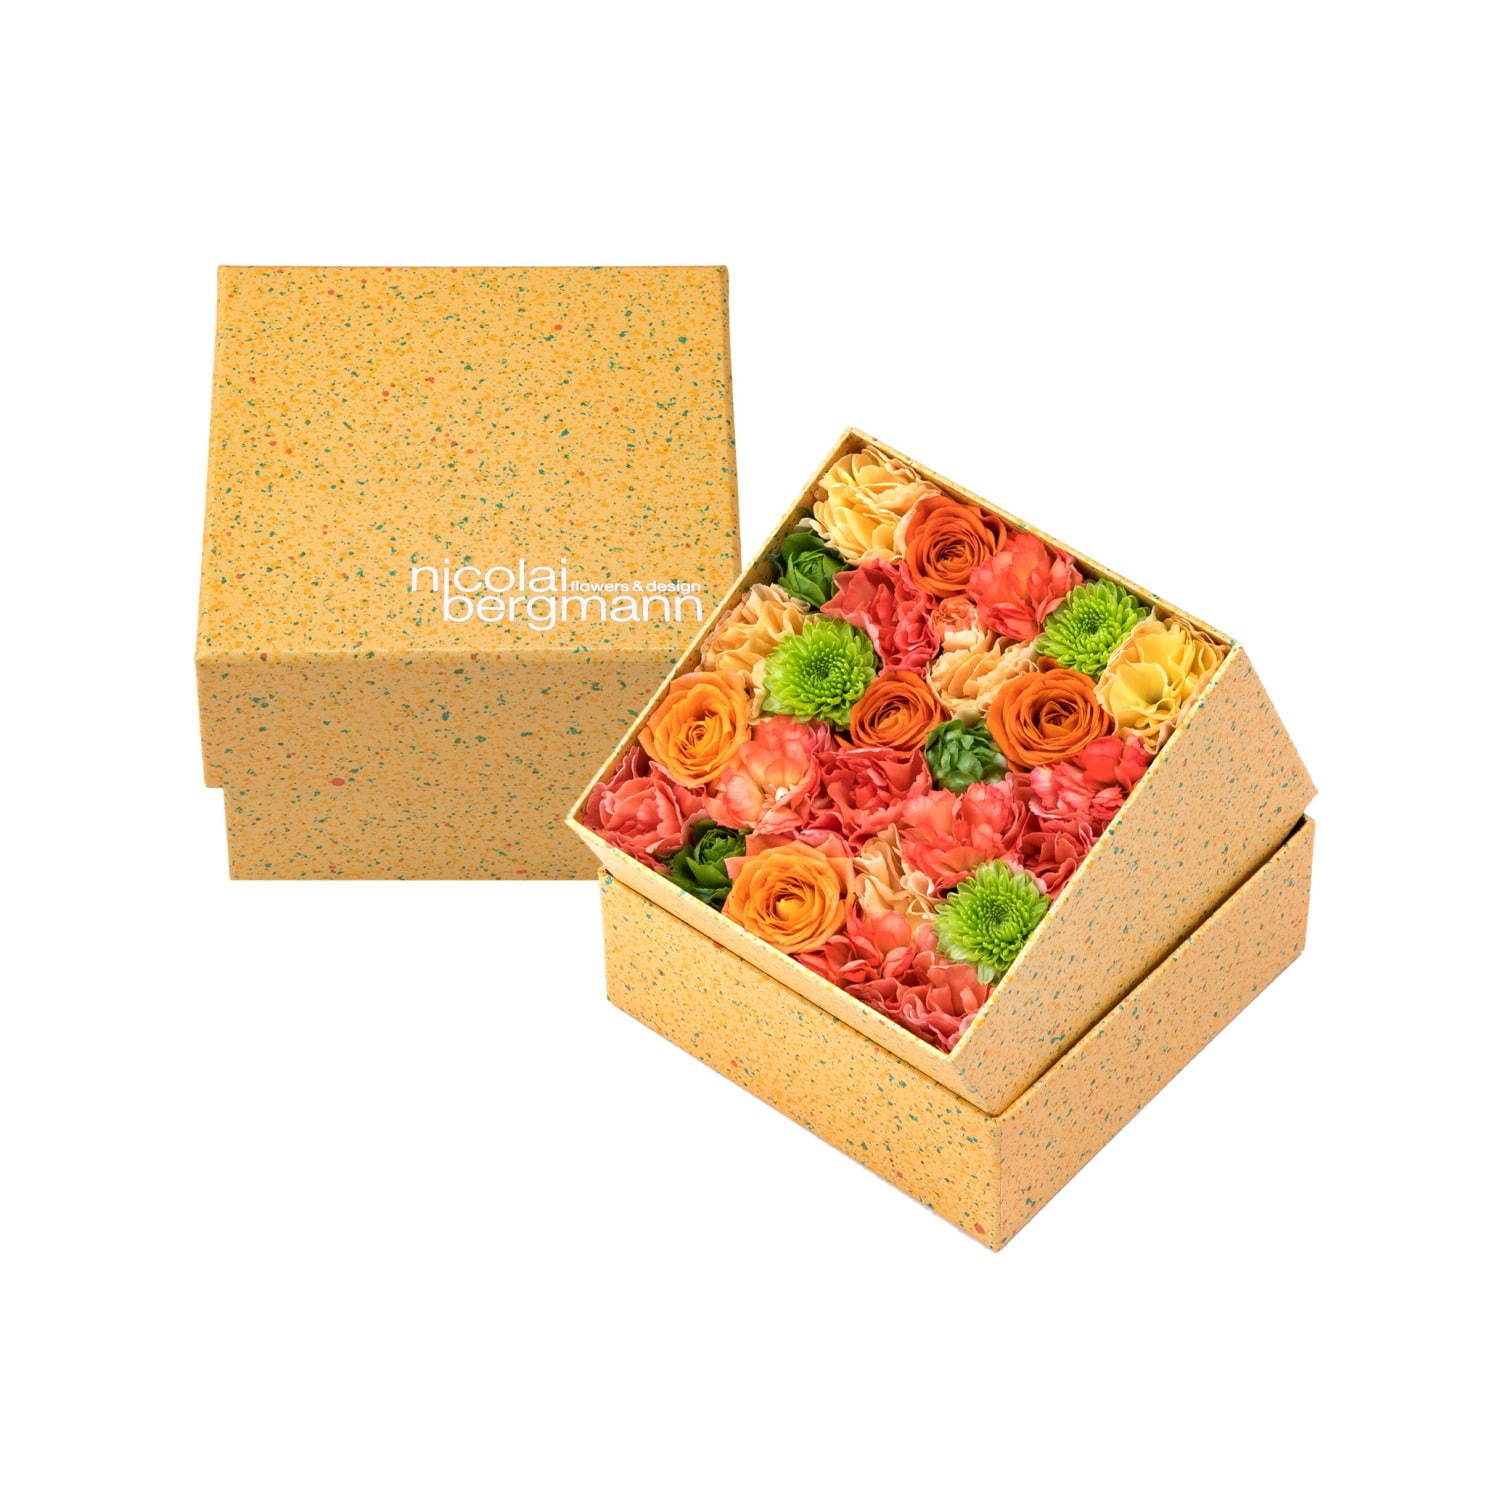 ニコライ バーグマン夏限定フラワーボックス、オレンジ×グリーンの花々をドット柄ボックスに詰めて｜写真1